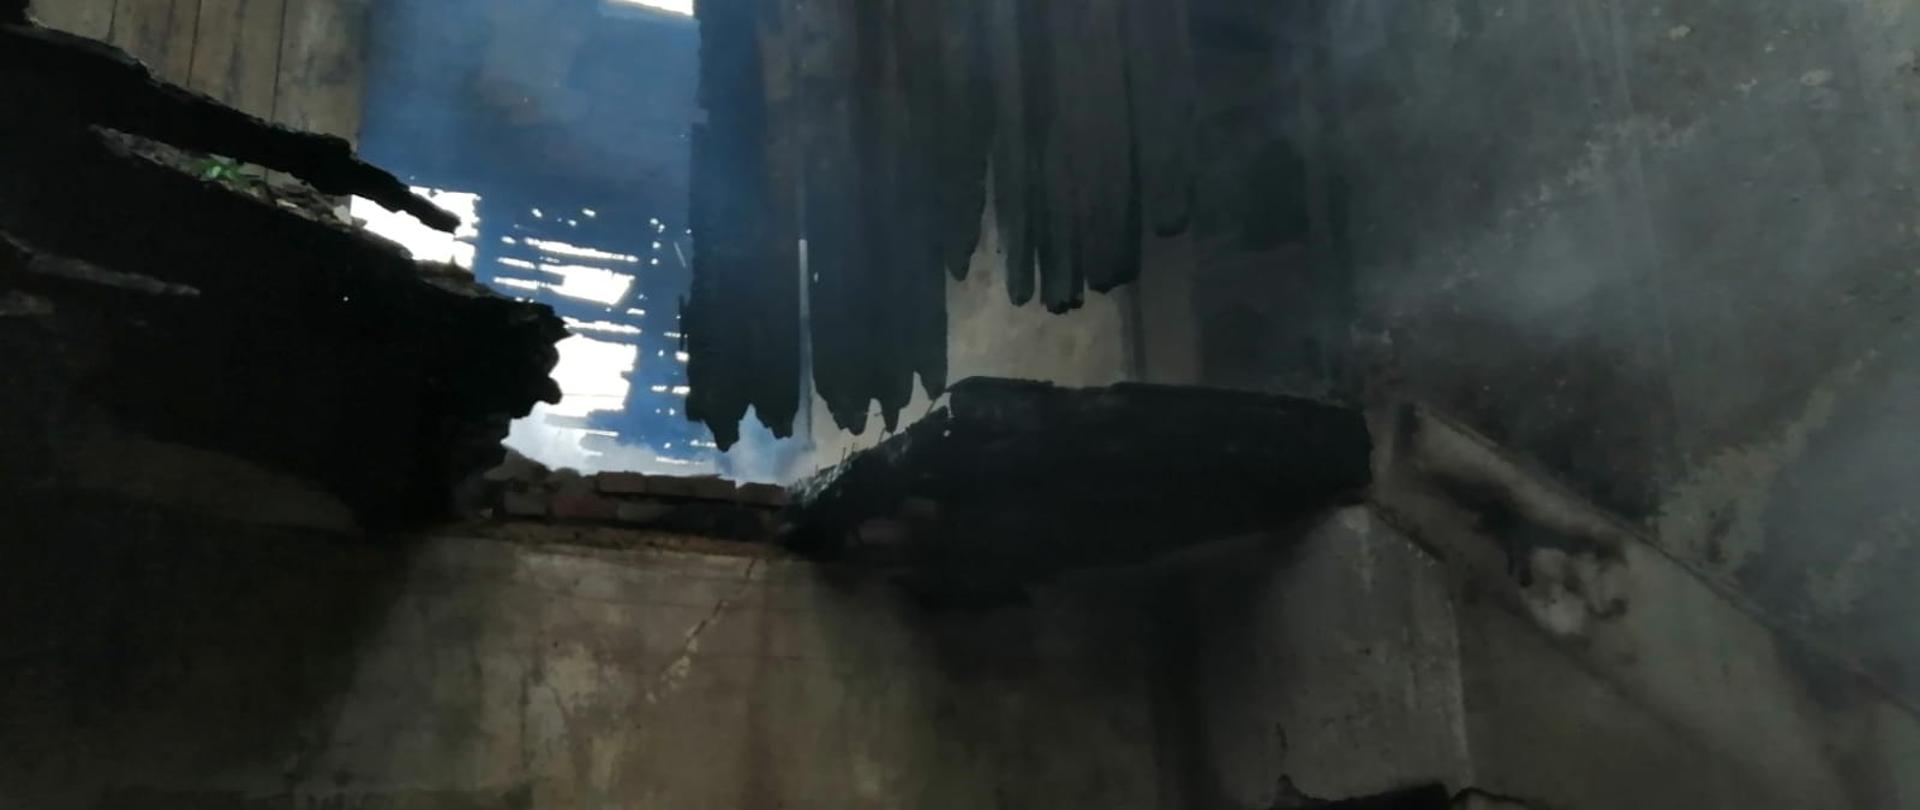 Zdjęcie przedstawia widok wnętrza budynku po pożarze. Uwidoczniony jest przepalony strop oraz dach.